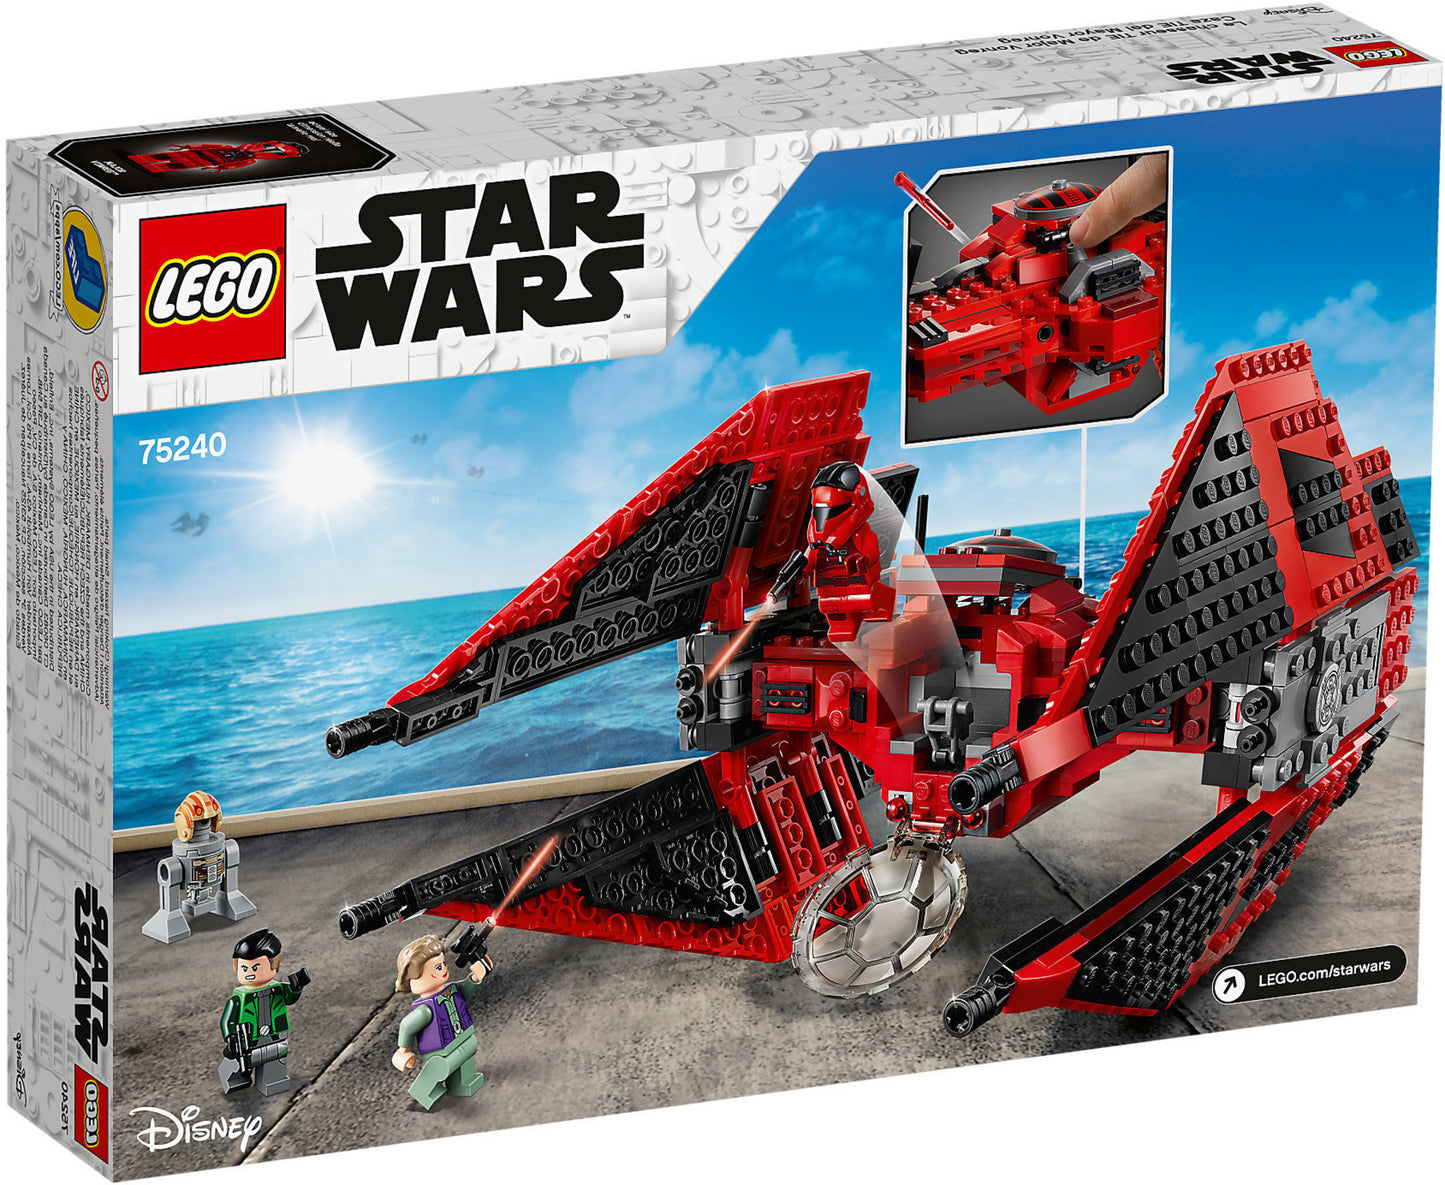 75240 LEGO Star Wars - Tie Fighter™ Del Maggiore Vonreg